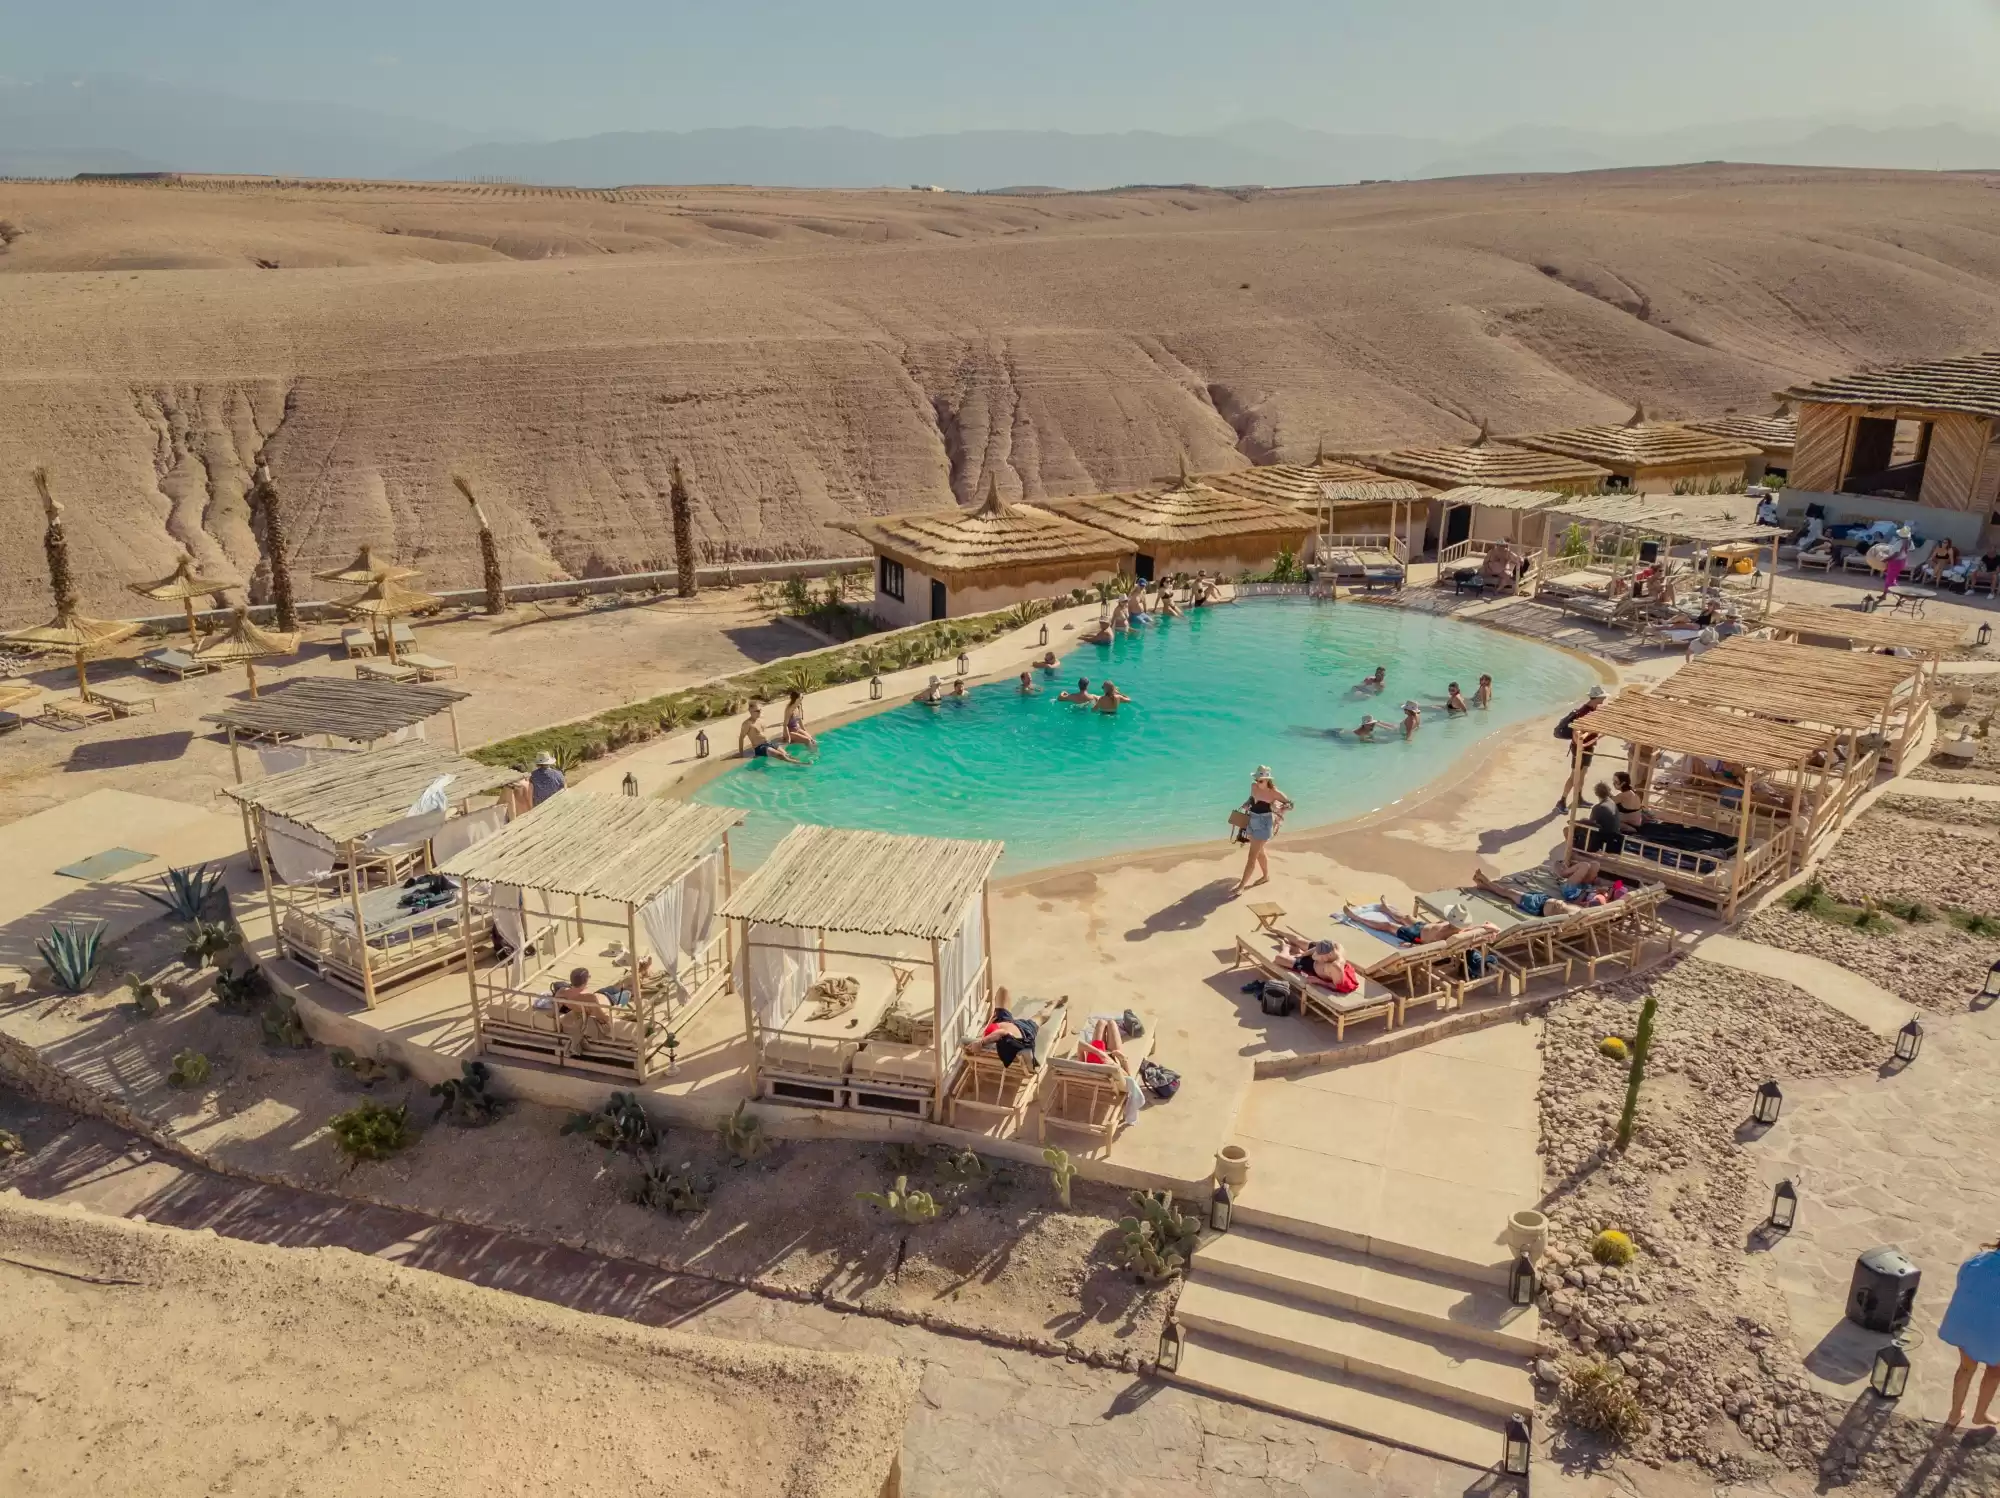  Giornata in piscina e pranzo/cena nel deserto di Agafay: Un'oasi tra le dune